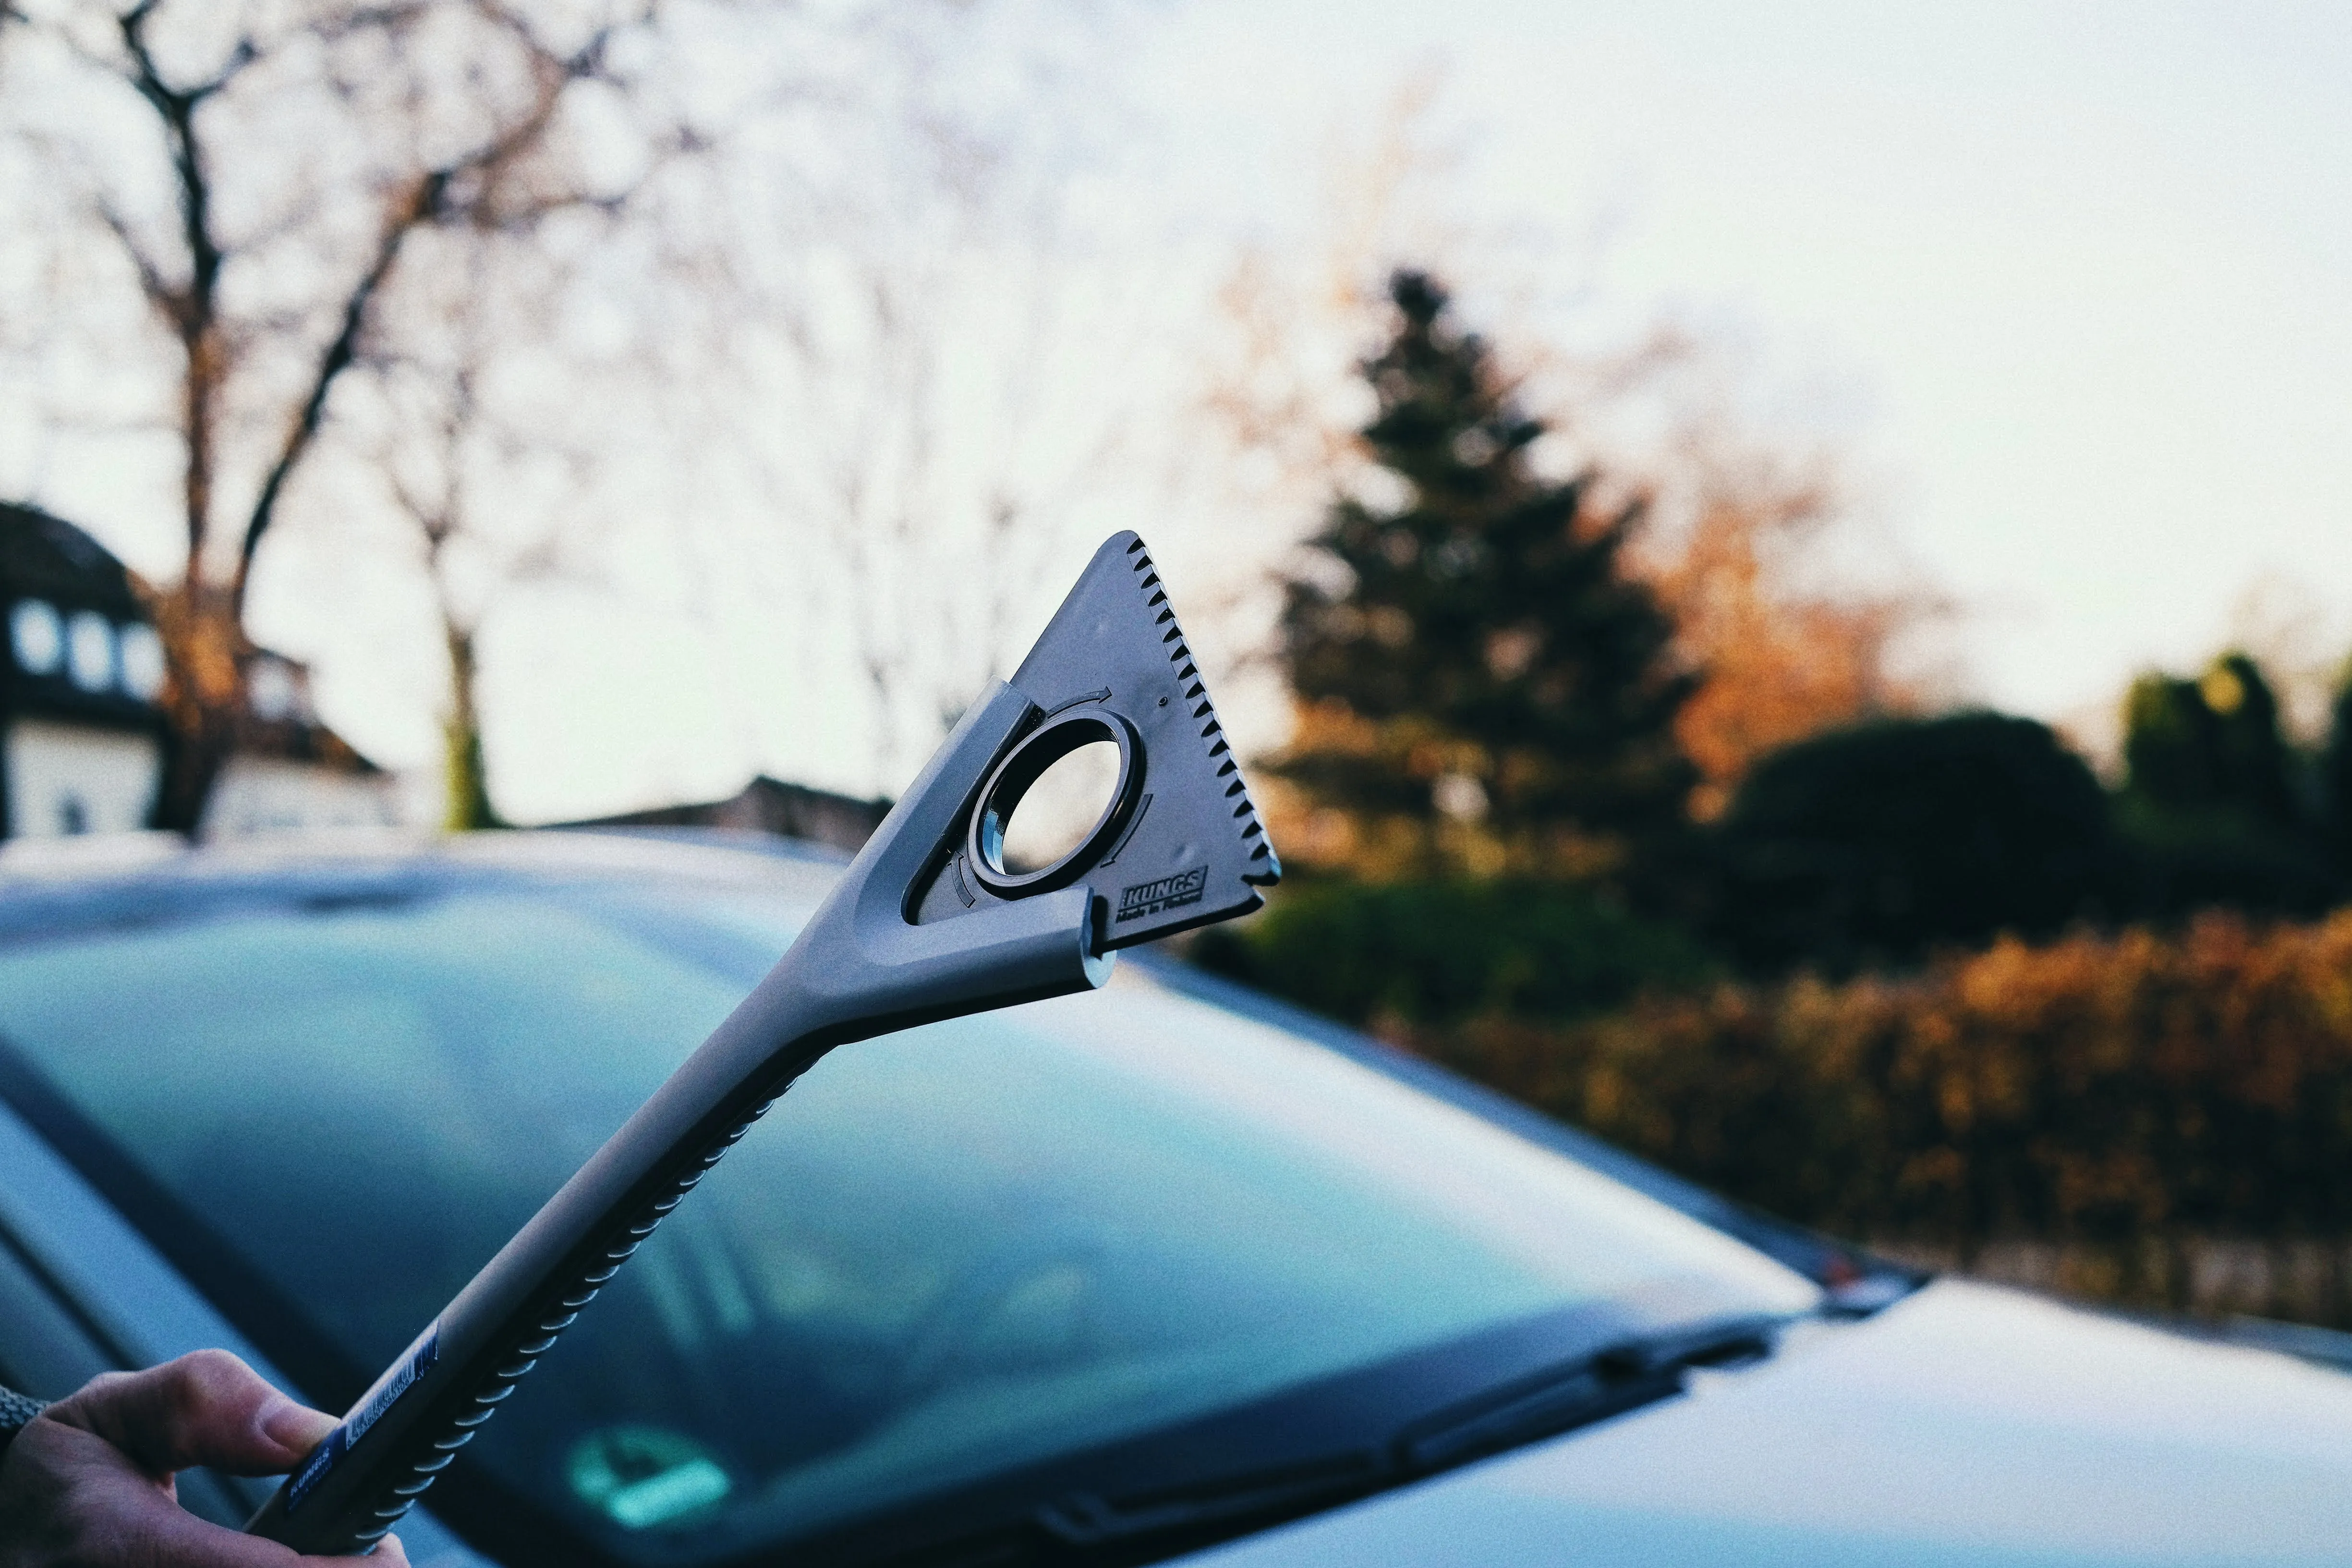 KUNGS AQUA-IS Abzieher mit Eiskratzer | Das neue Wintergadget für dein Auto